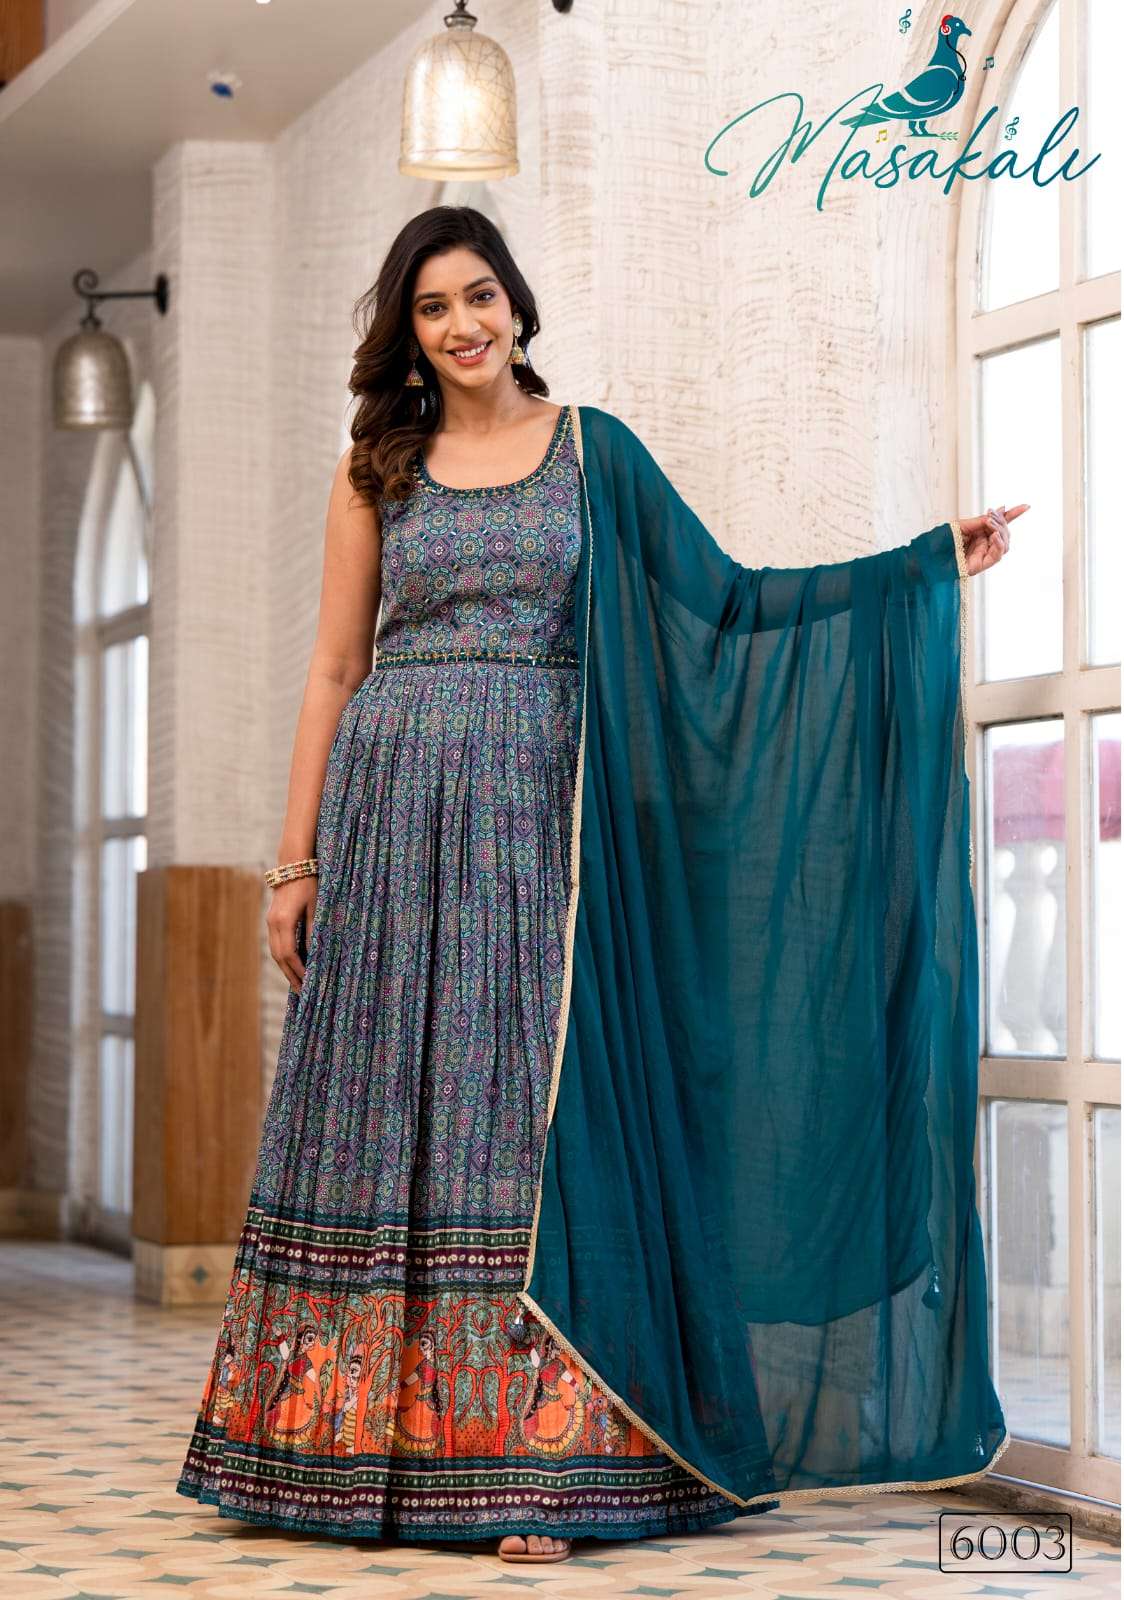 masakali vol-6 6001-6005 series latest designer readymade anarkali gown type suit wholesaler surat gujarat